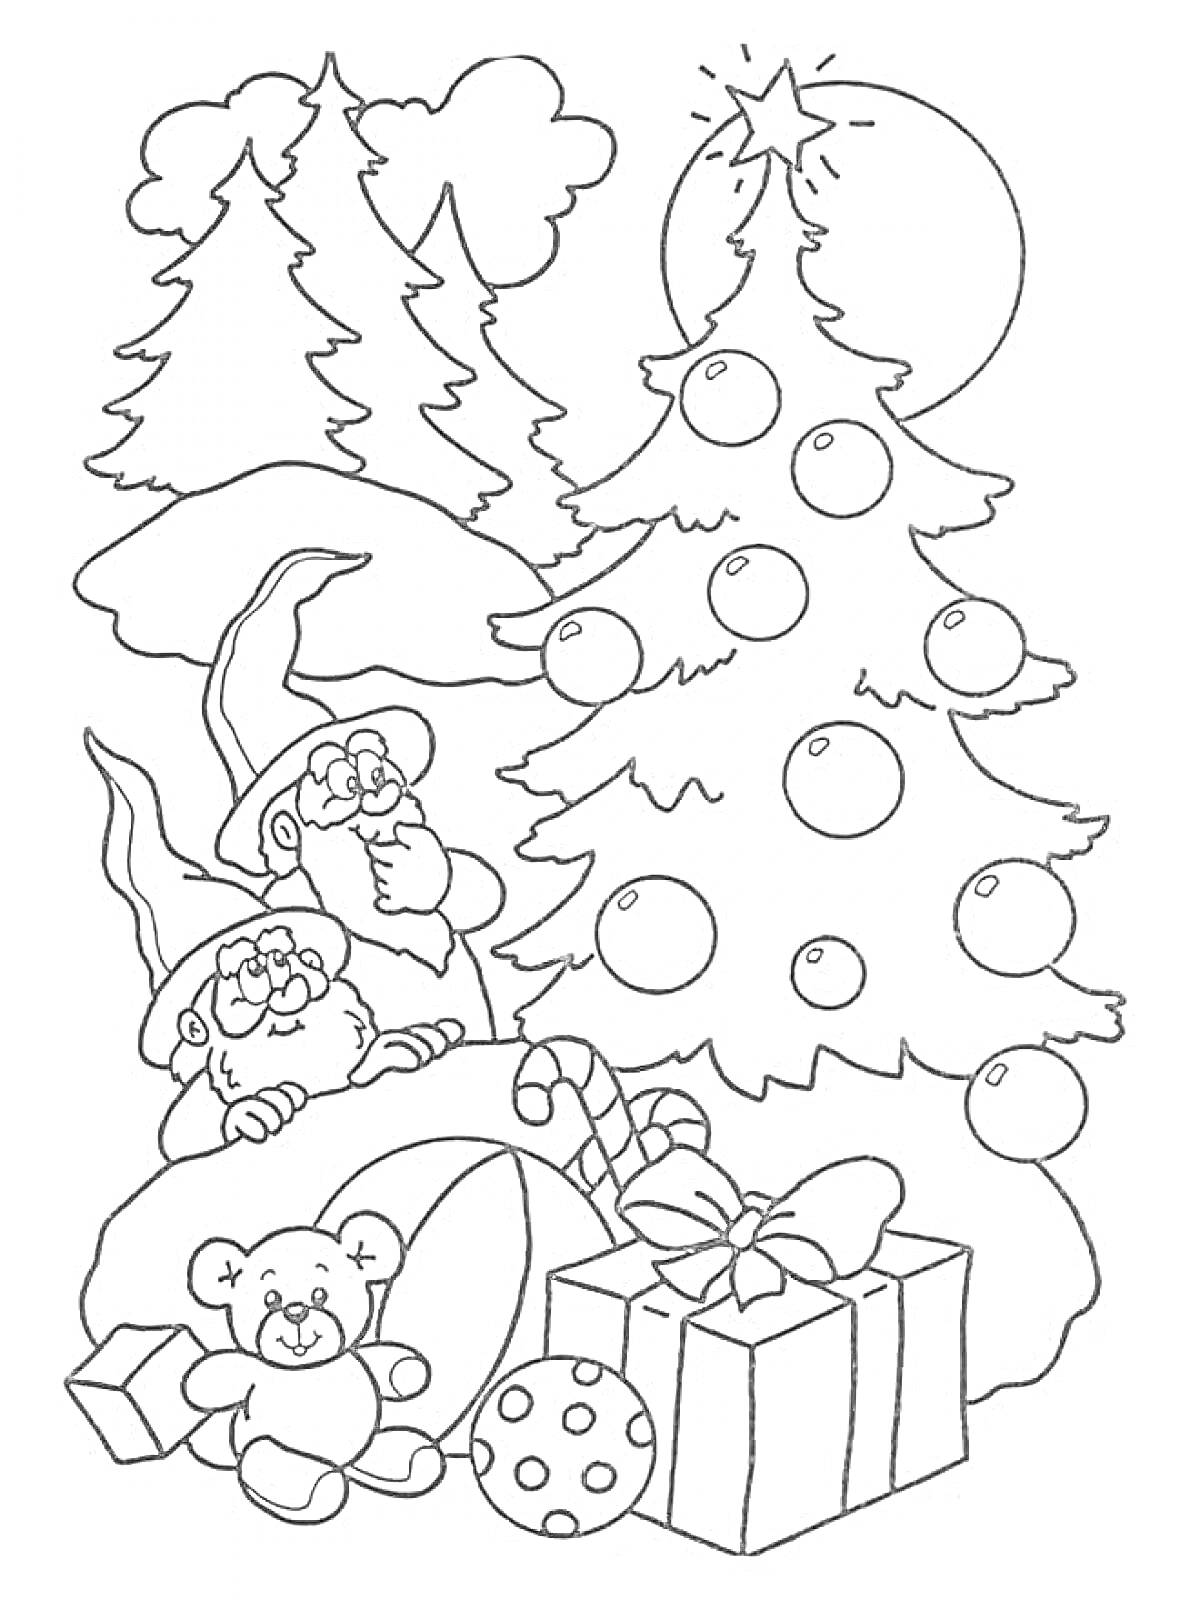 Два новогодних эльфа рядом с ёлкой, игрушечным мишкой, подарками, ёлочными шарами, конфетой и ёлками на заднем плане под луной